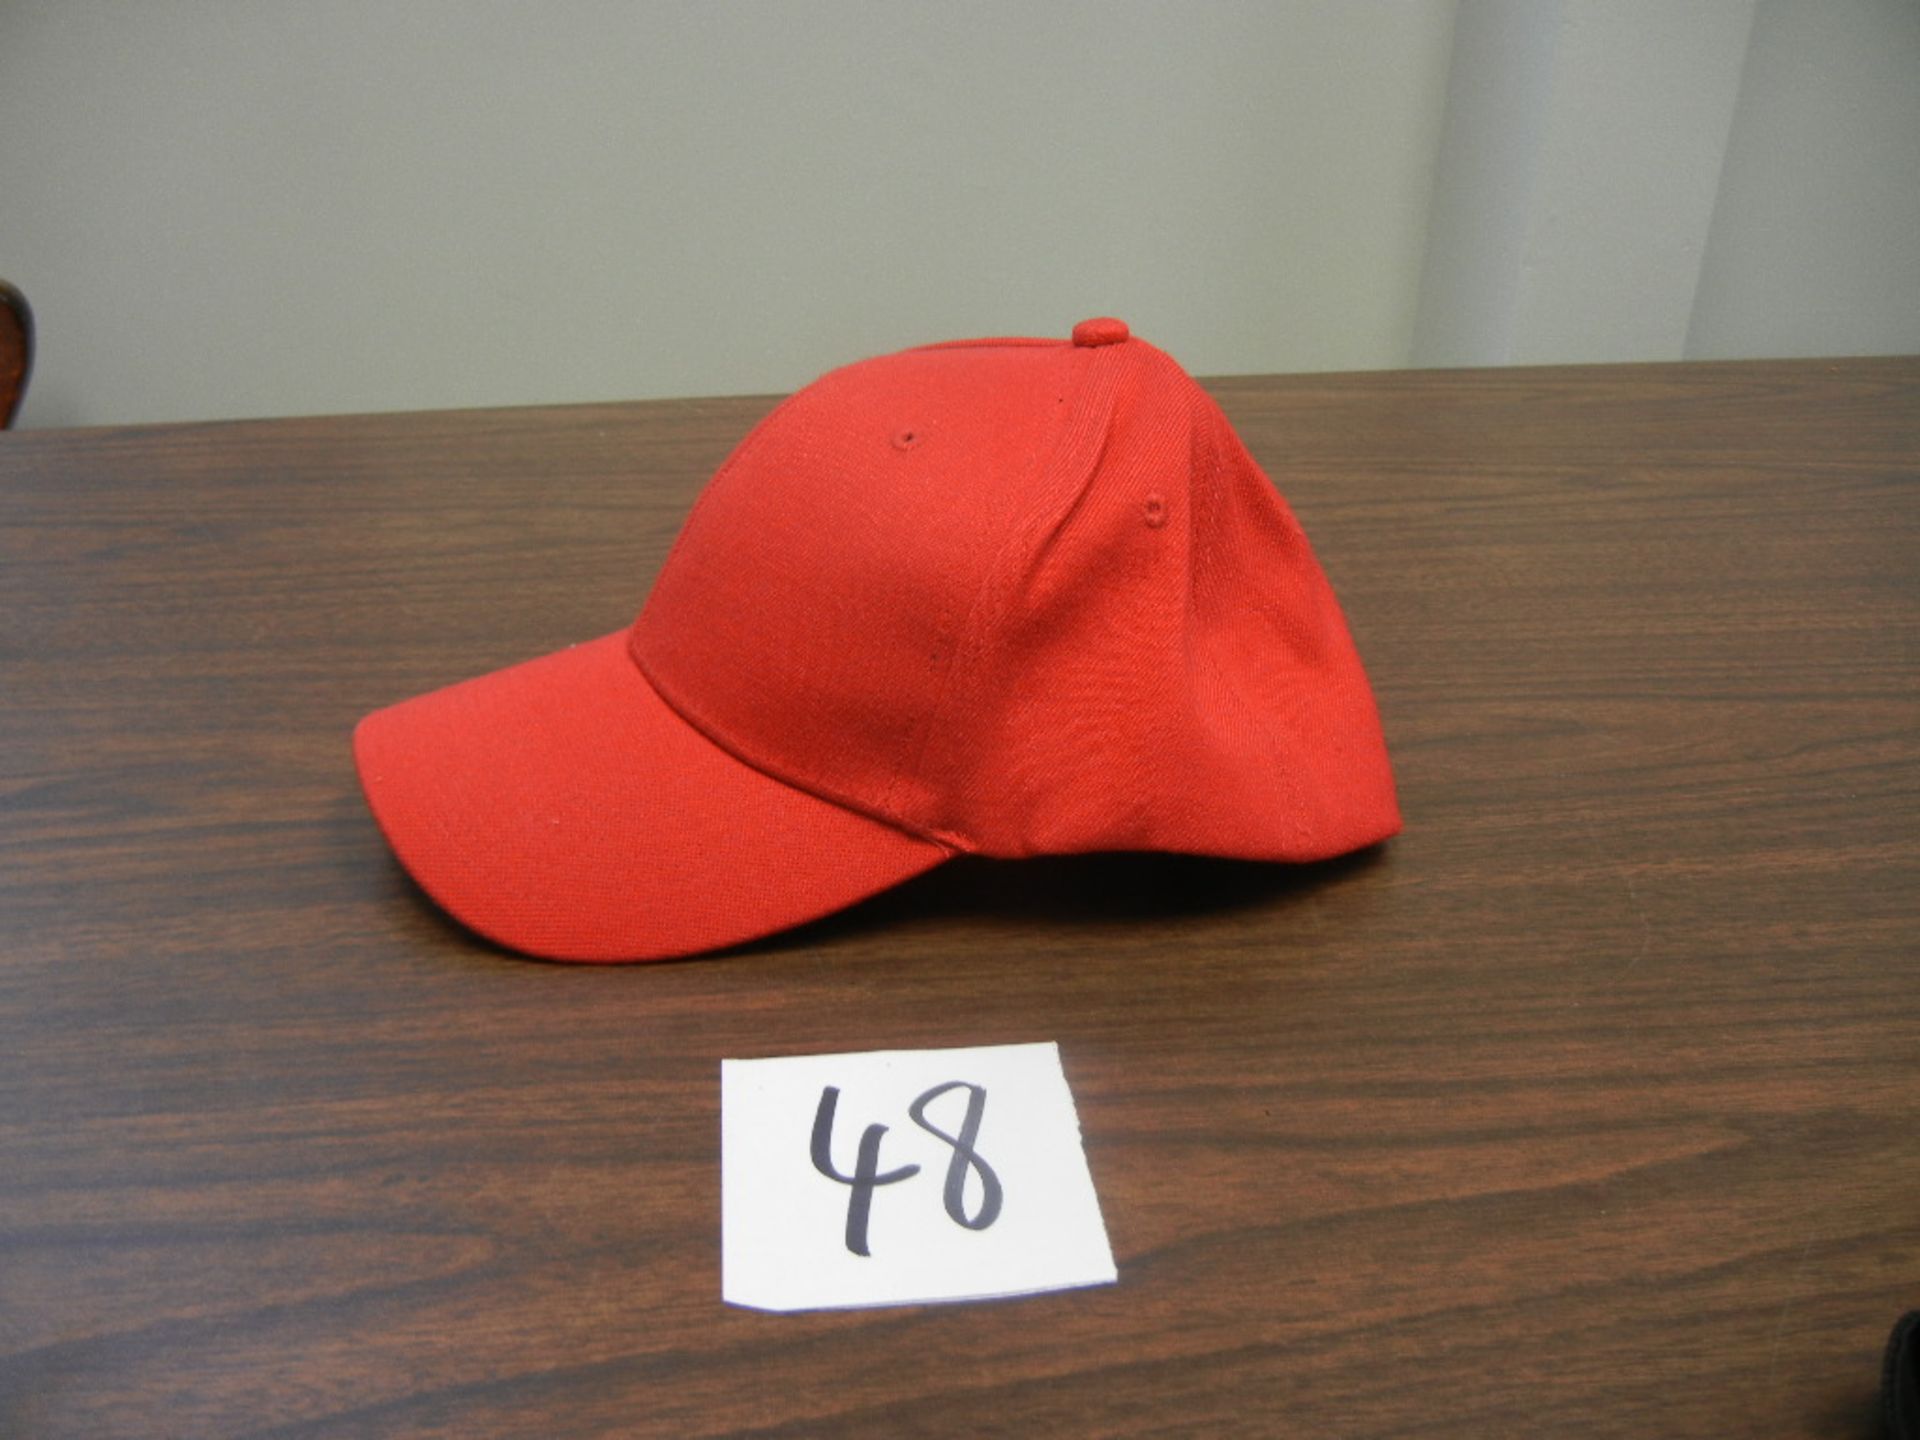 Wool Blend Stretch Fit cap, 6 Panel, with US Patent 24 hats/case, 3cs s/m, 3cs m/l, 3cs l/xl